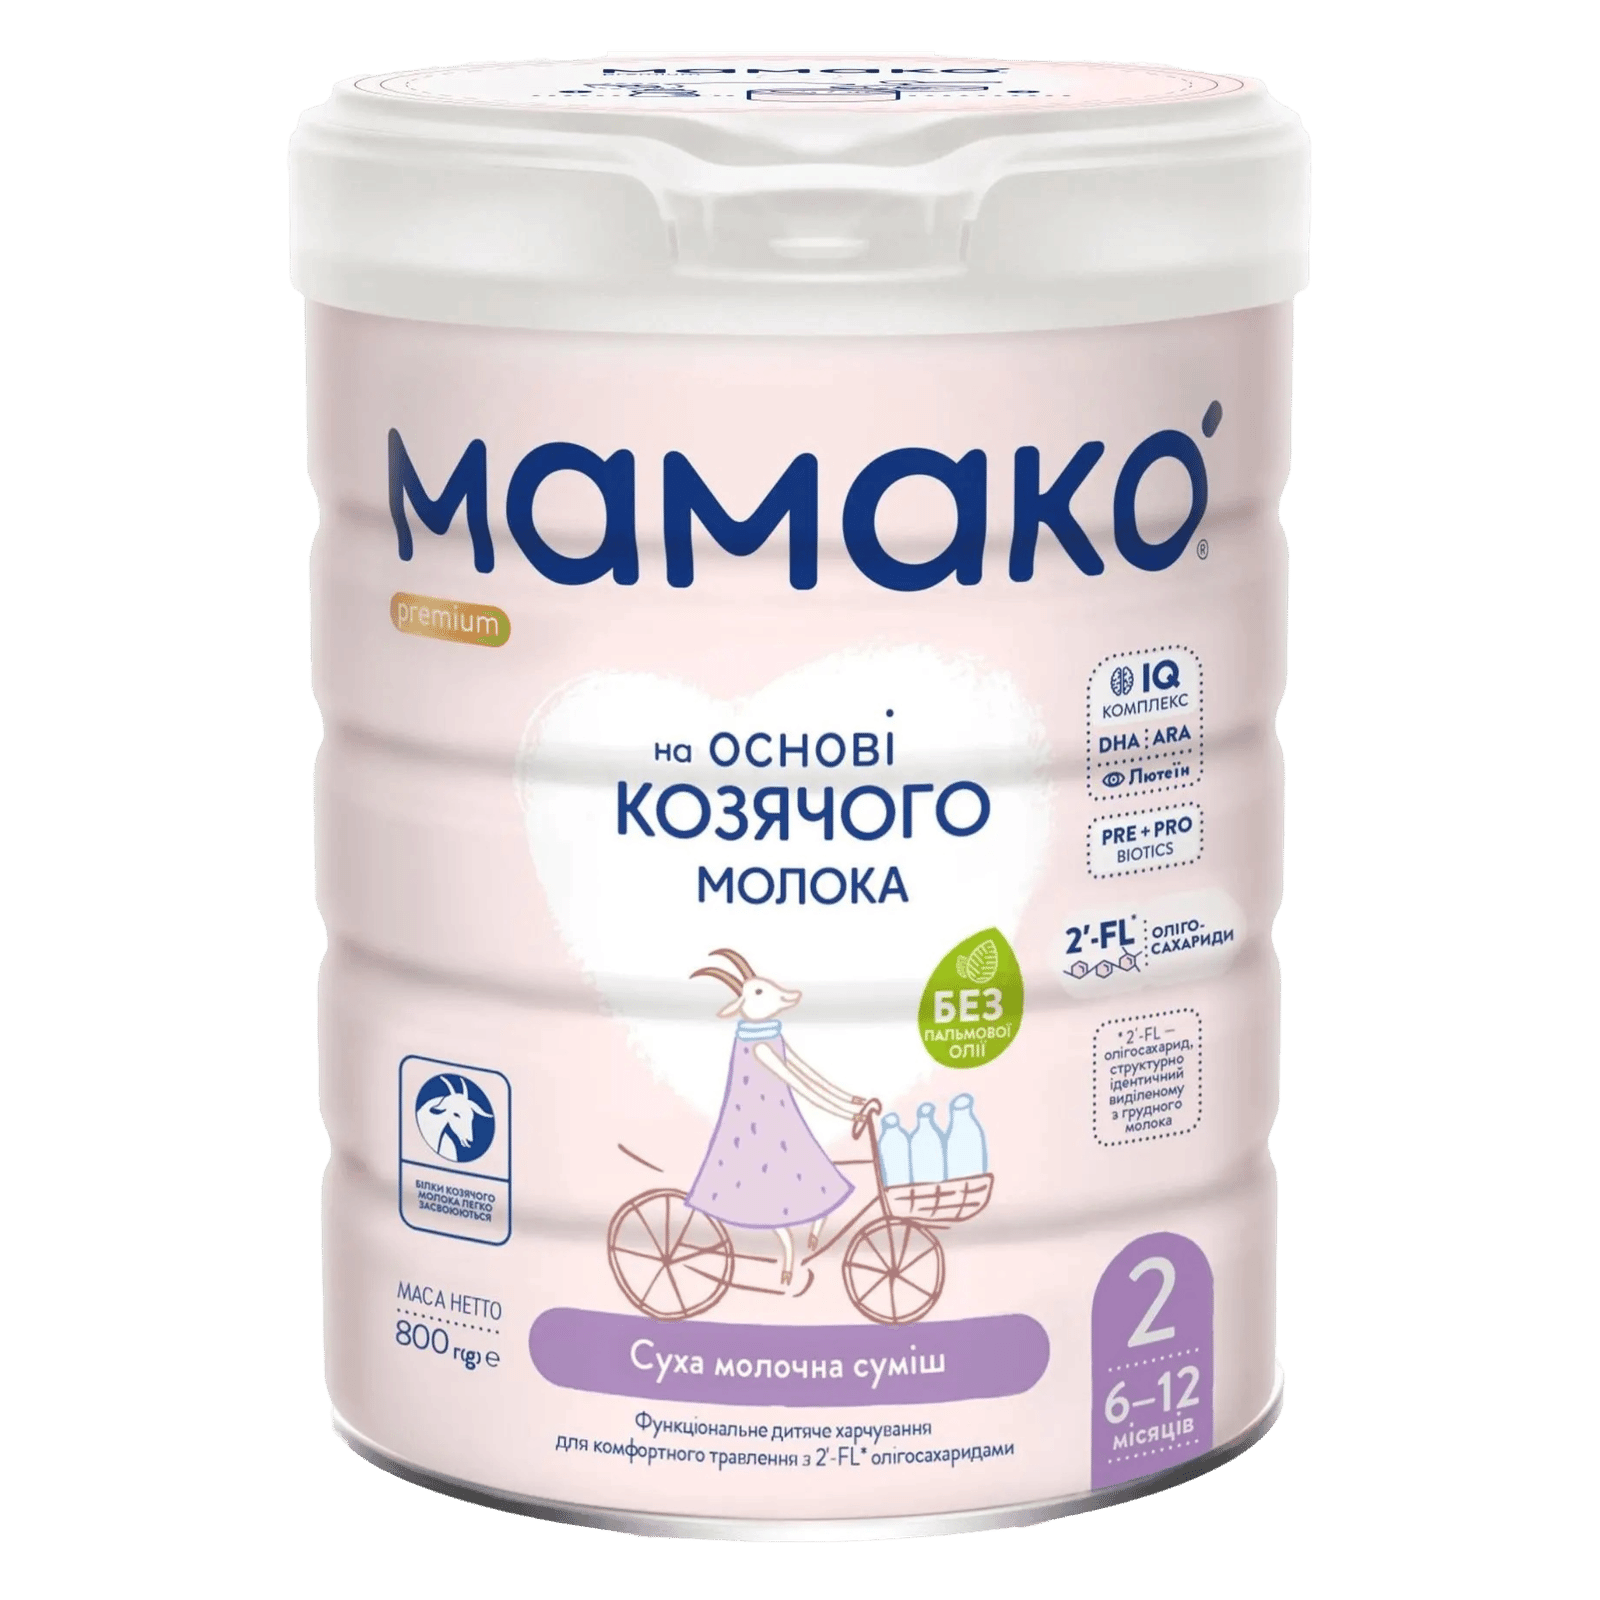 Суміш «Мамако» 2 Premium суха молочна - 1